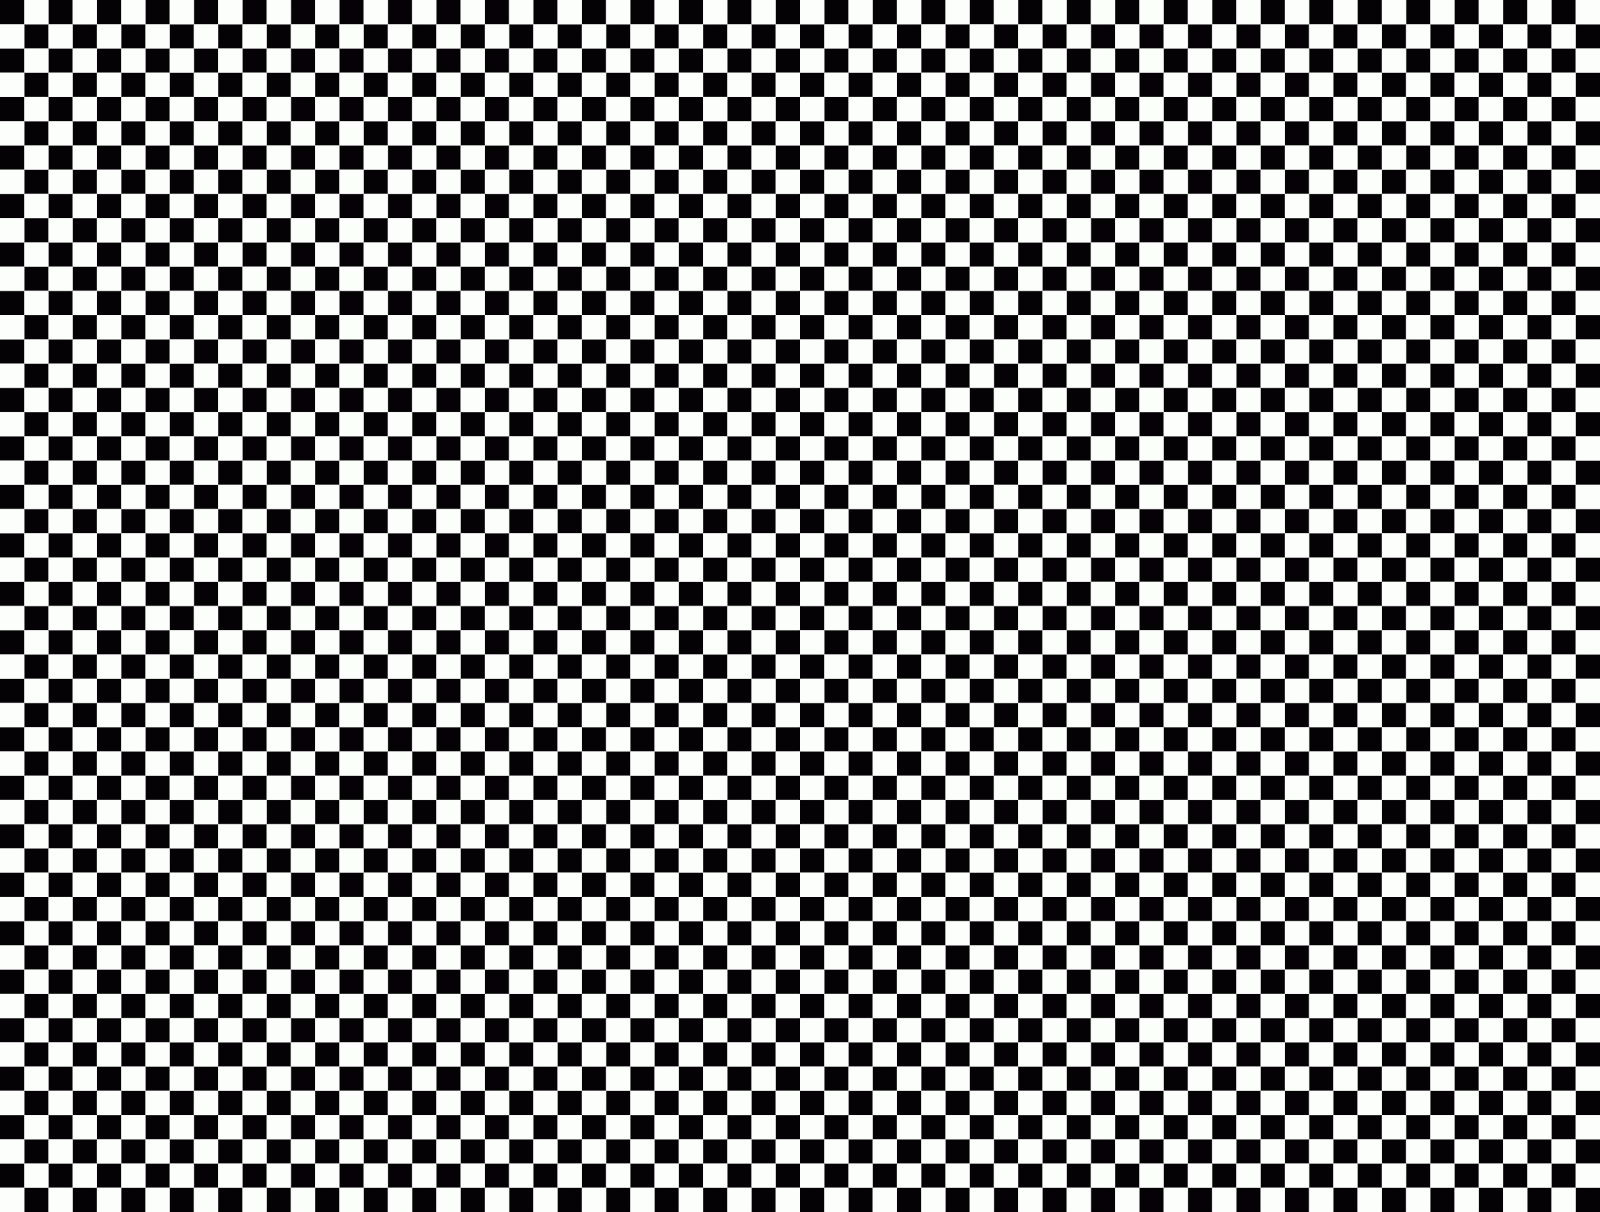 Checkered Wallpaper Checkered Wallpaper HD Wallpapers Download Free Map Images Wallpaper [wallpaper376.blogspot.com]